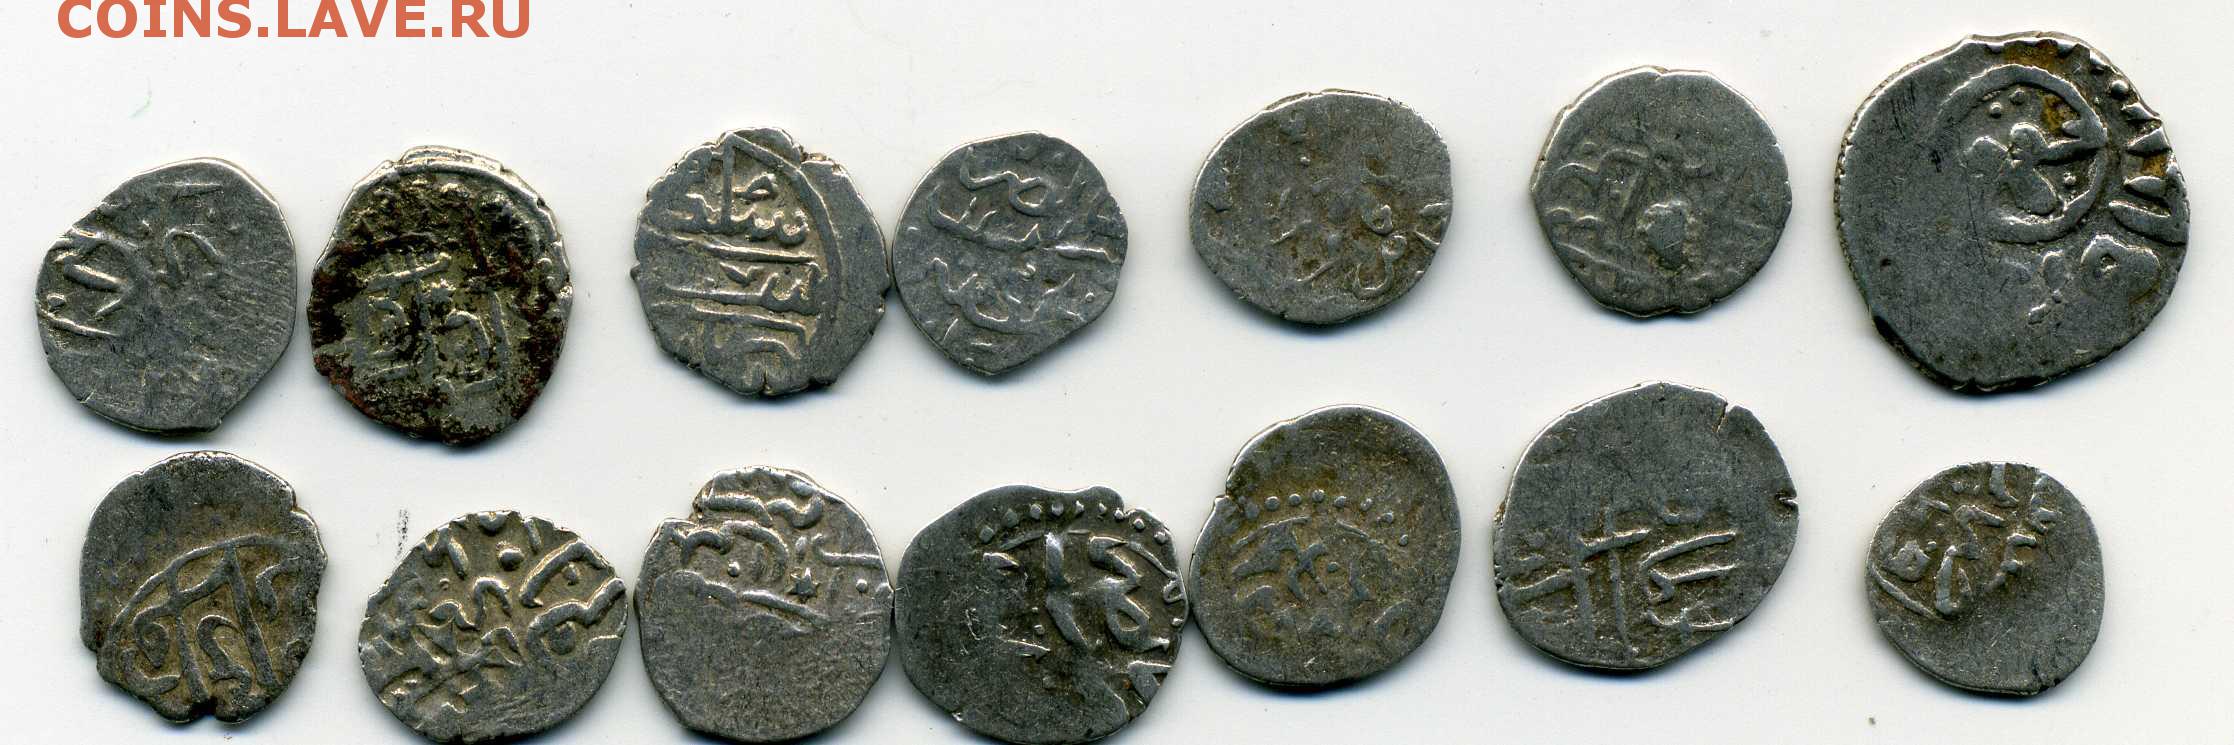 Монеты 10 века. Арабский дирхем 10 век. Старинные арабские монеты. Древние серебряные арабские монеты. Монета с арабскими надписями.